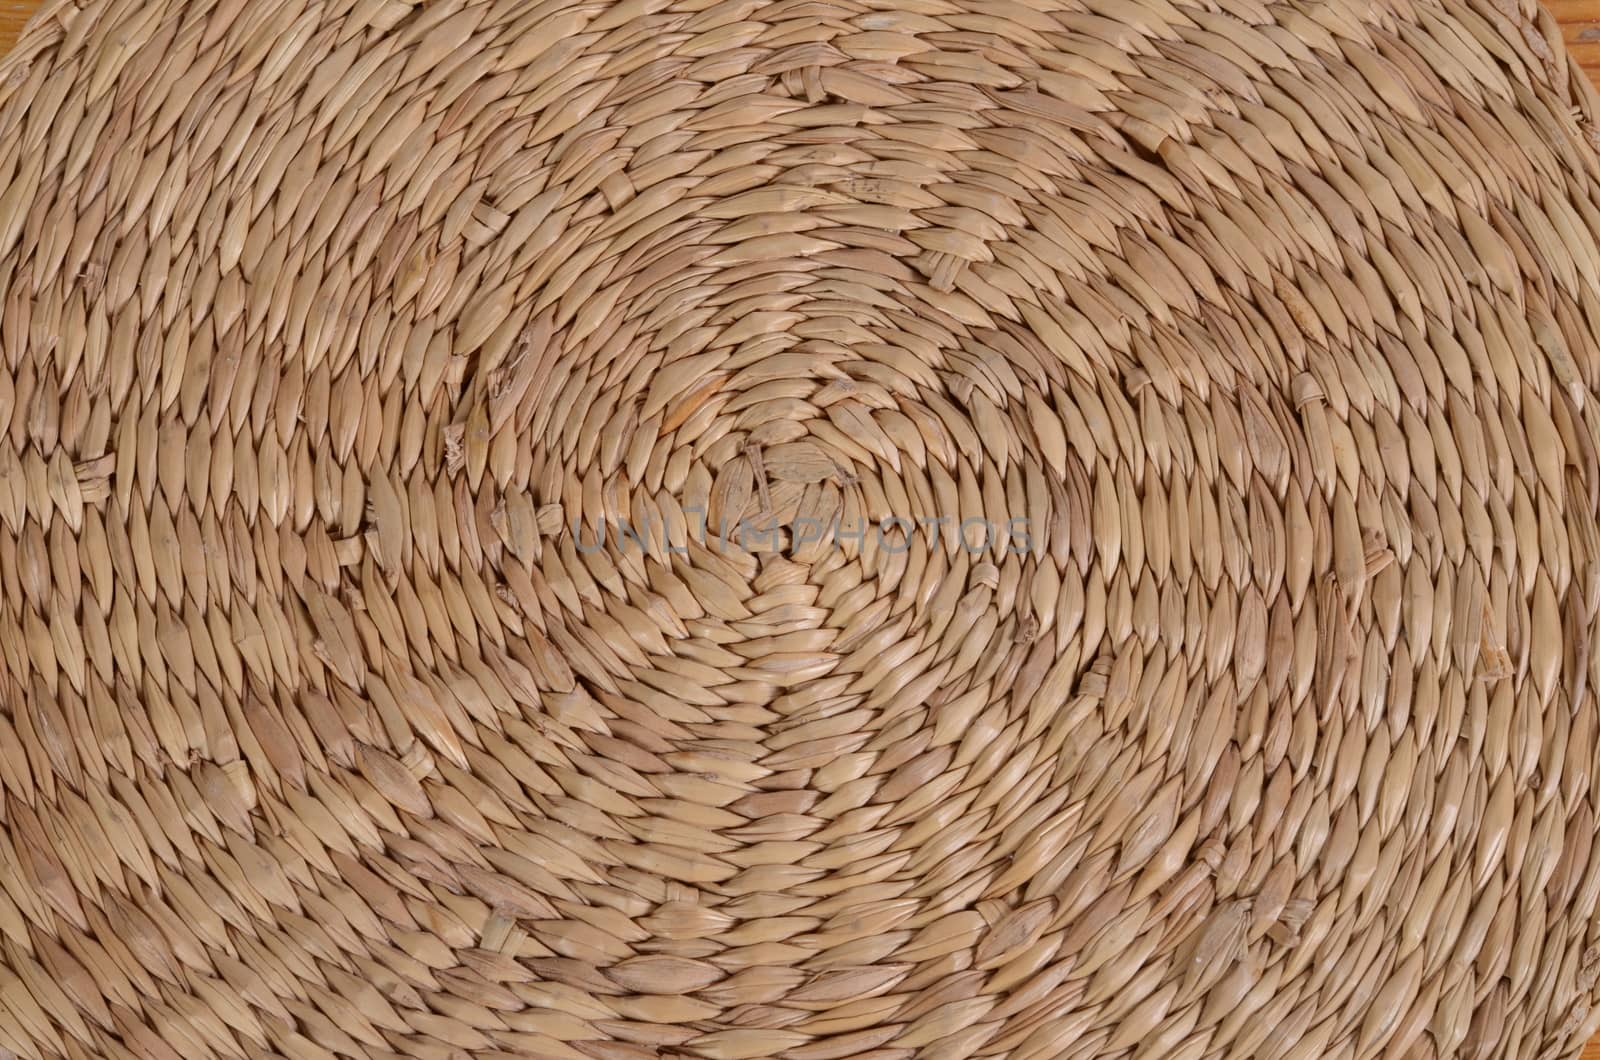 straw basket detail